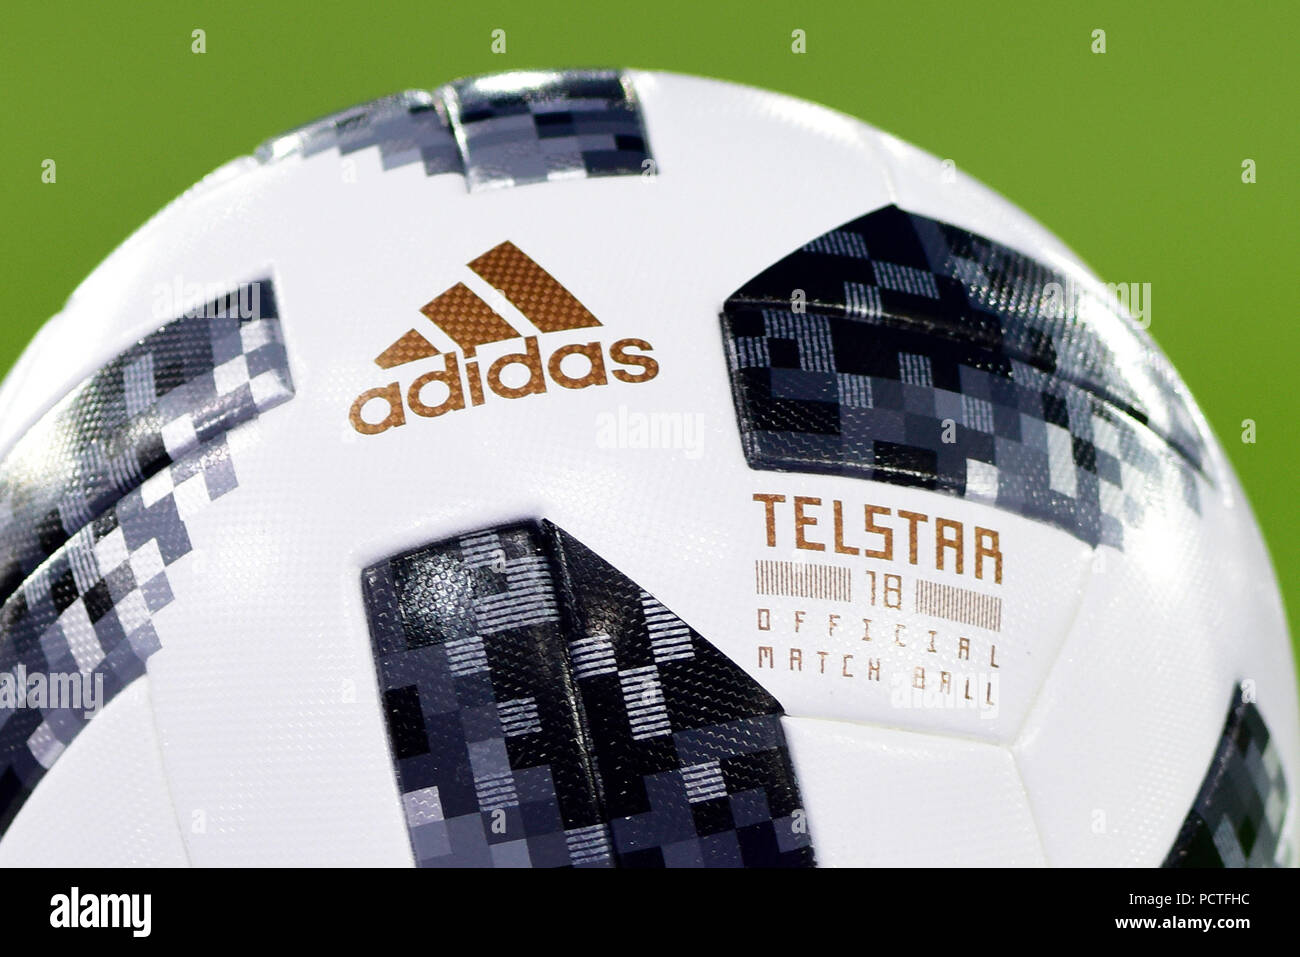 Adidas wm ball -Fotos und -Bildmaterial in hoher Auflösung – Alamy